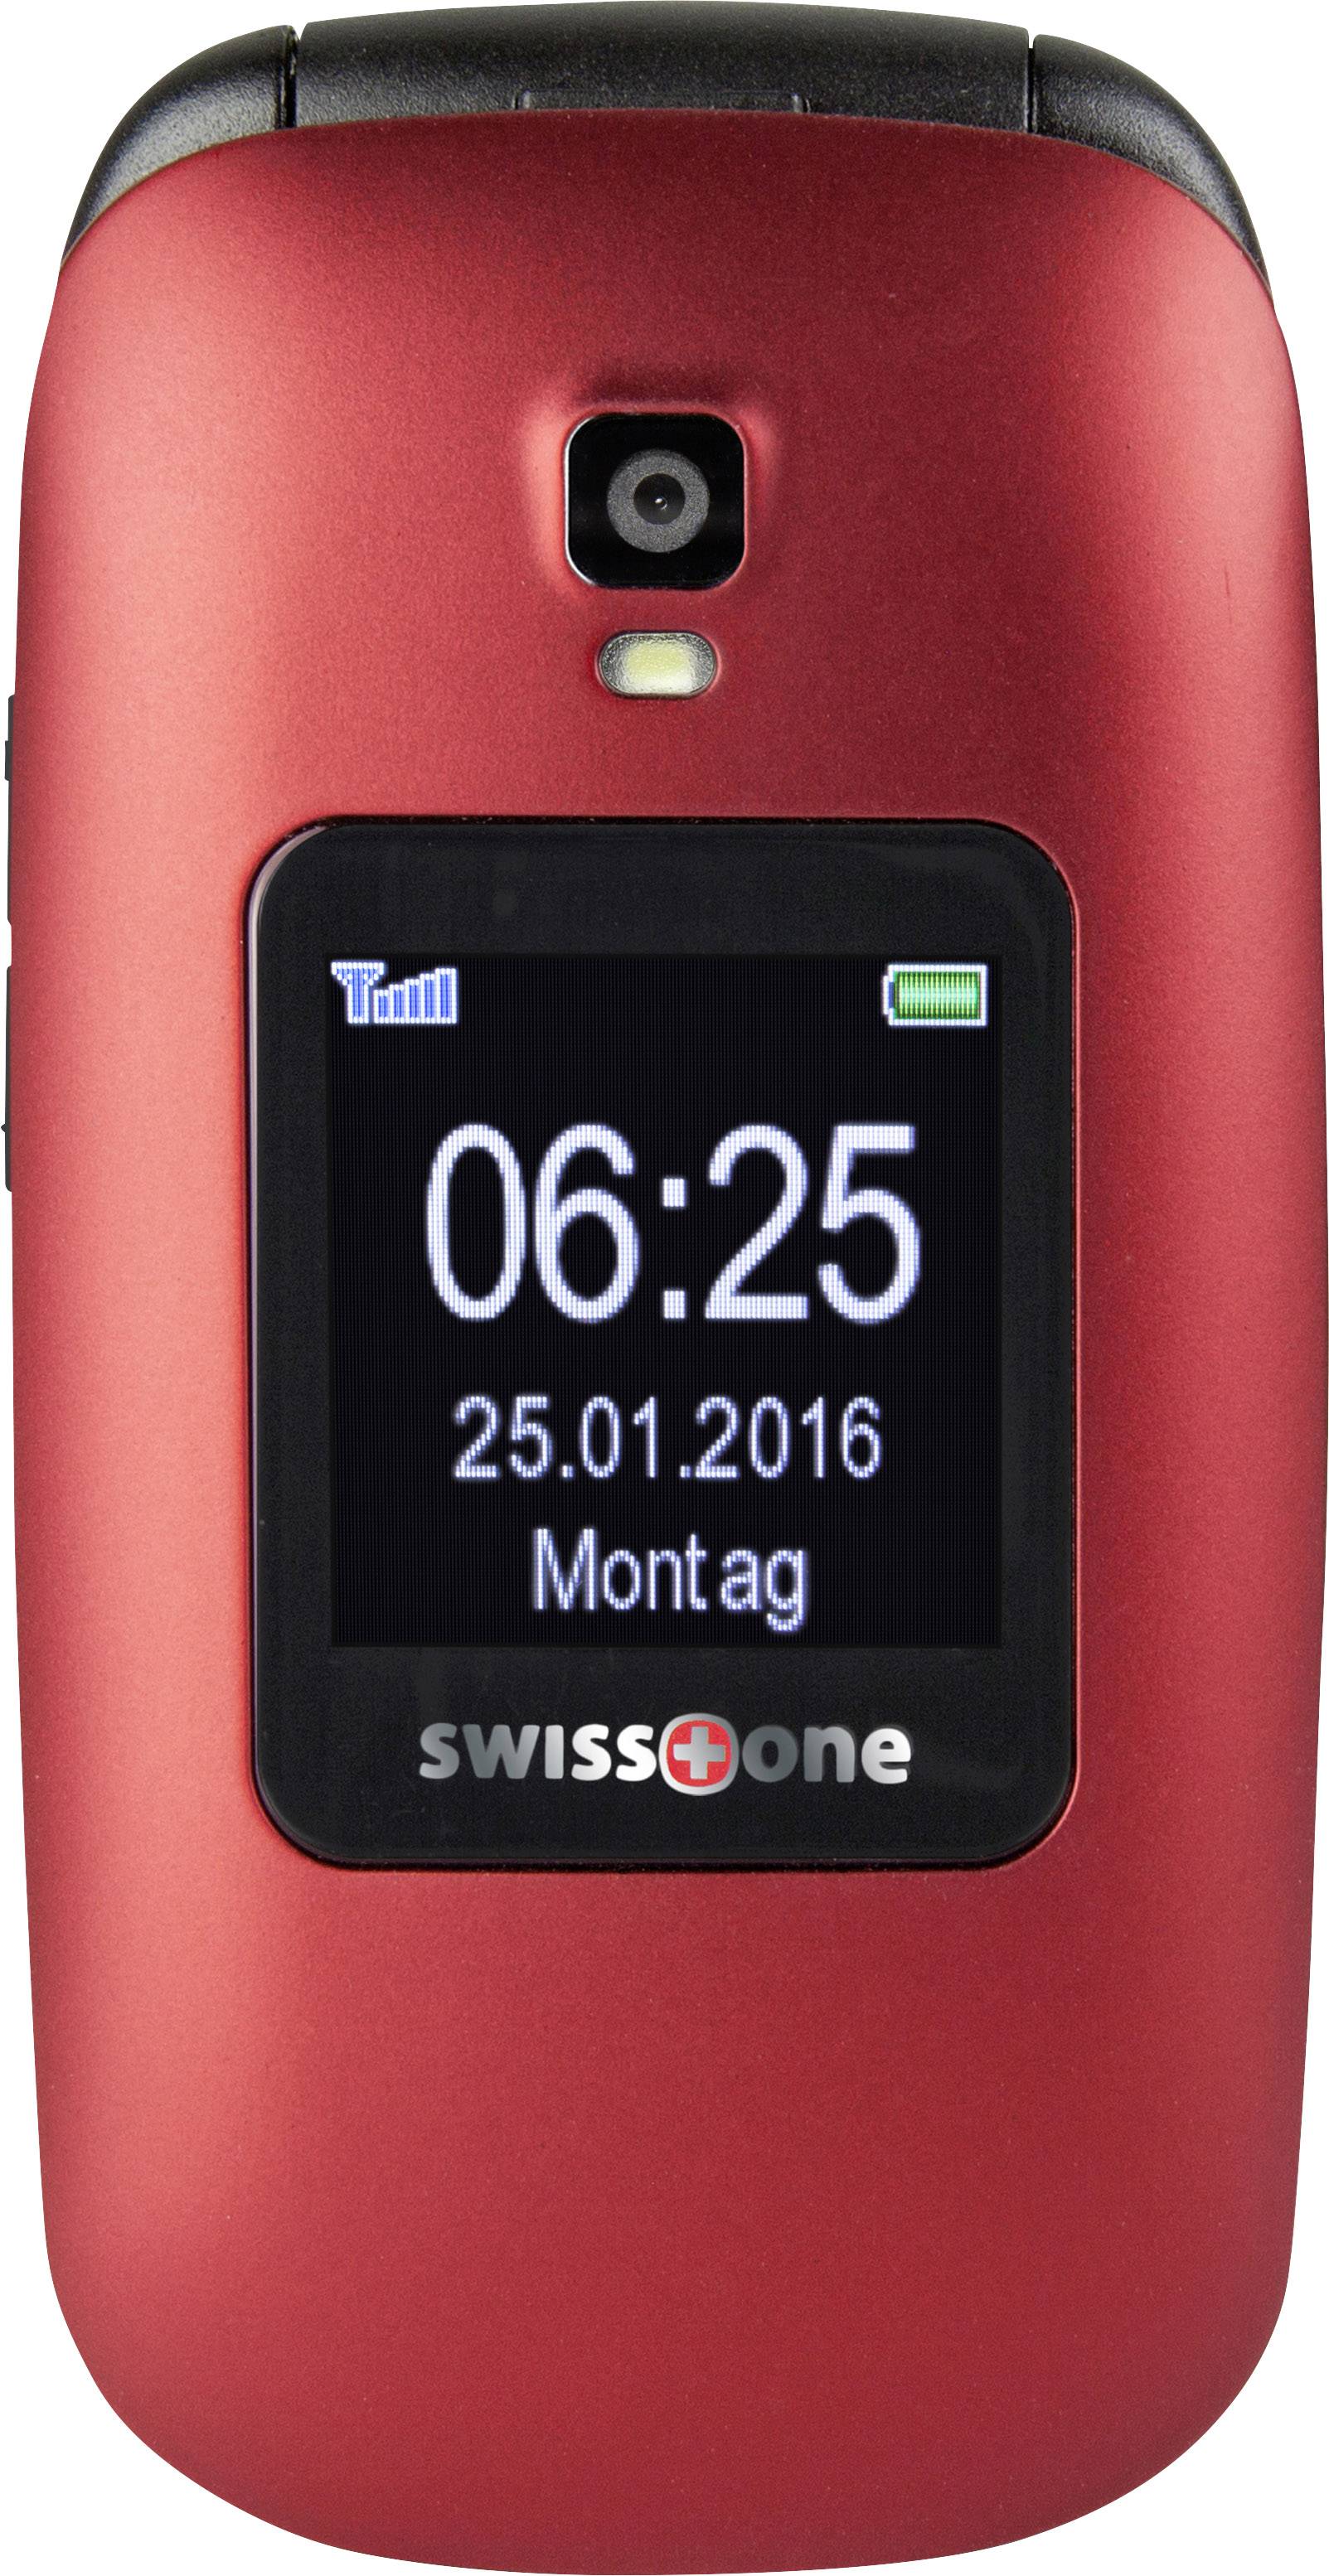 625 Rot Taste kaufen mit SOS Ladestation, Senioren-Klapp-Handy BBM swisstone